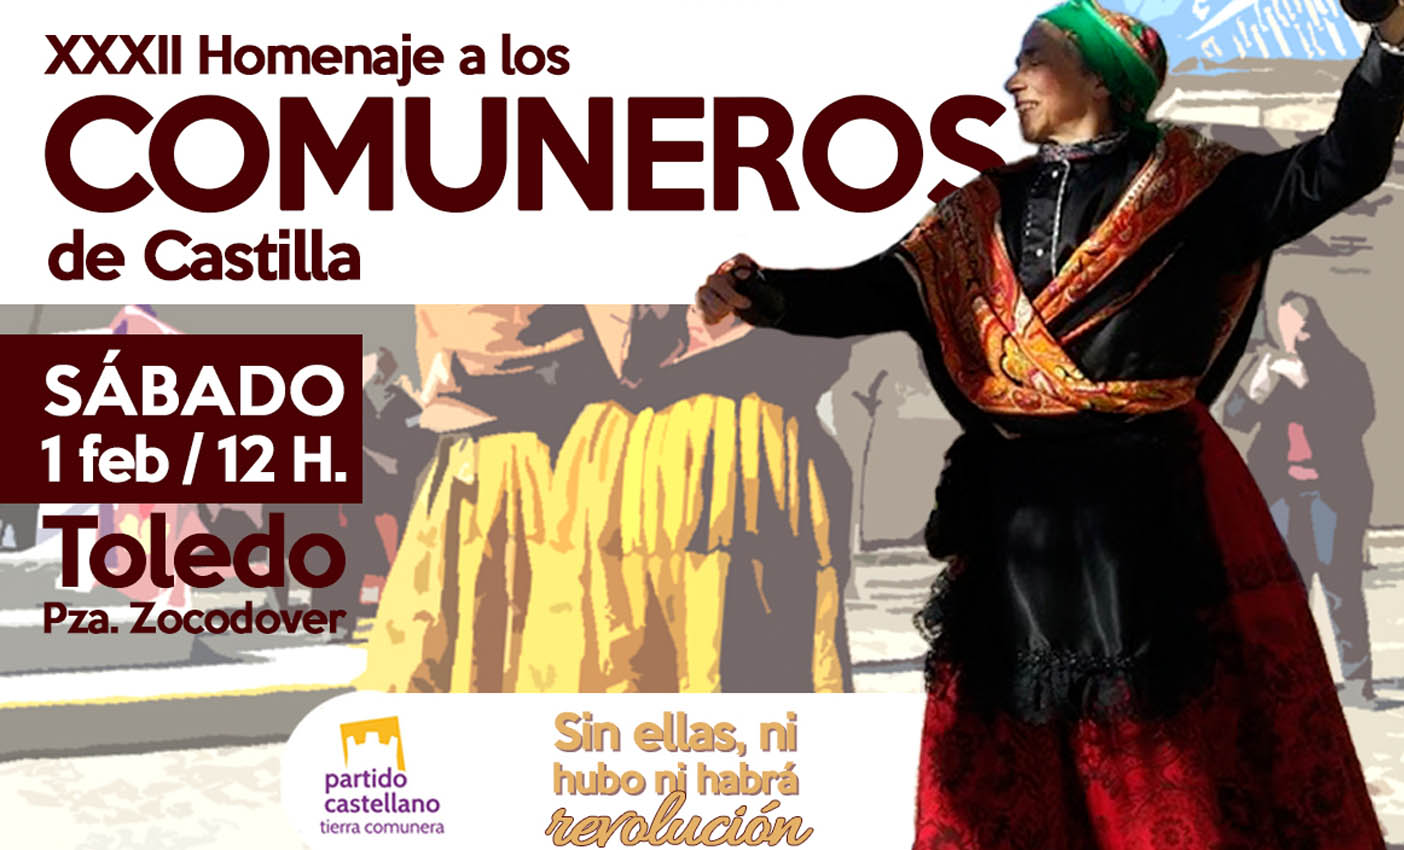 Homenaje a los comuneros de Castilla en Toledo.